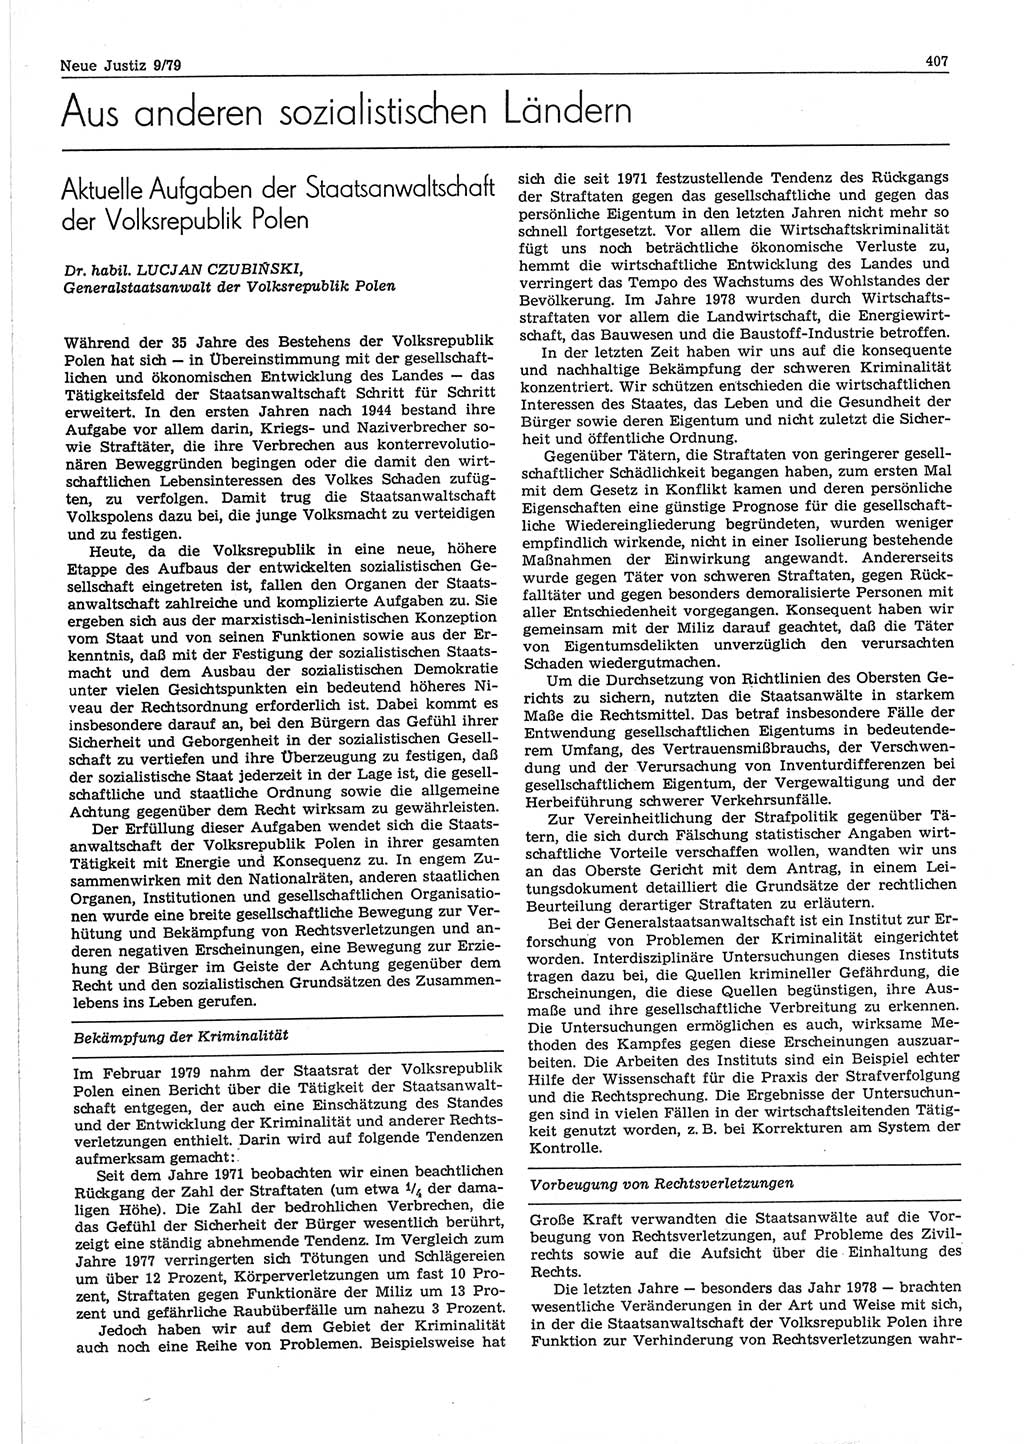 Neue Justiz (NJ), Zeitschrift für sozialistisches Recht und Gesetzlichkeit [Deutsche Demokratische Republik (DDR)], 33. Jahrgang 1979, Seite 407 (NJ DDR 1979, S. 407)